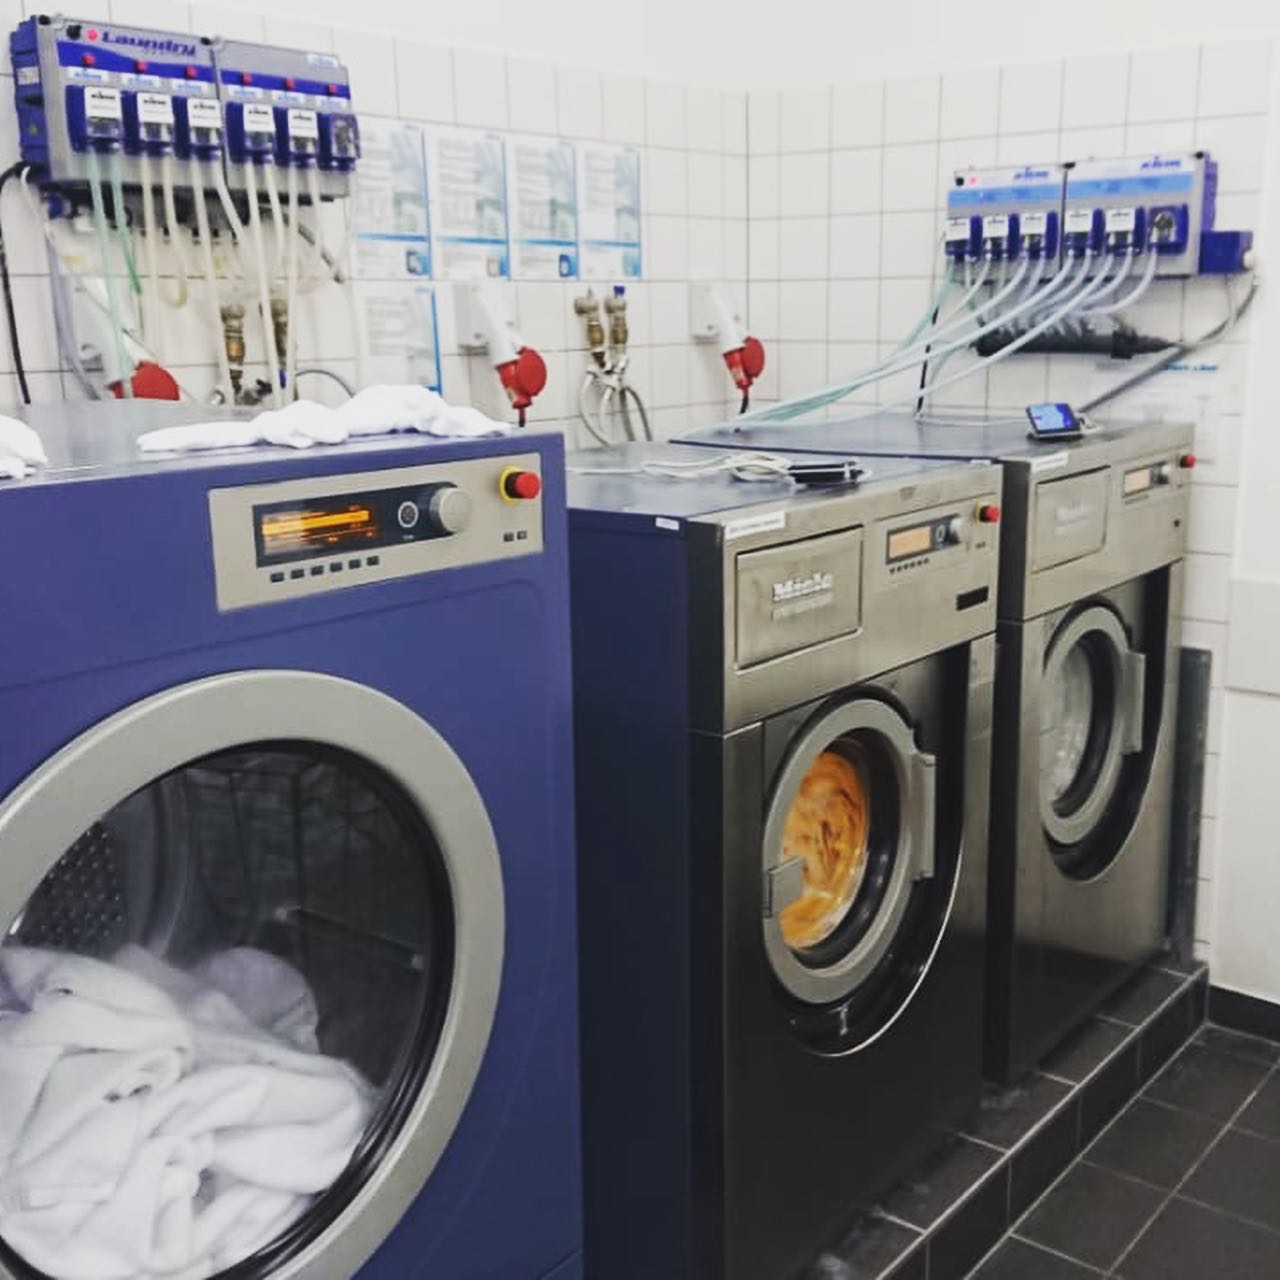 Оцените работу нашего мастера 🤩⠀ Выполнено подключение сушильных и стиральных машин в прачечной.⠀Екатеринбург, гостиница Анжело.